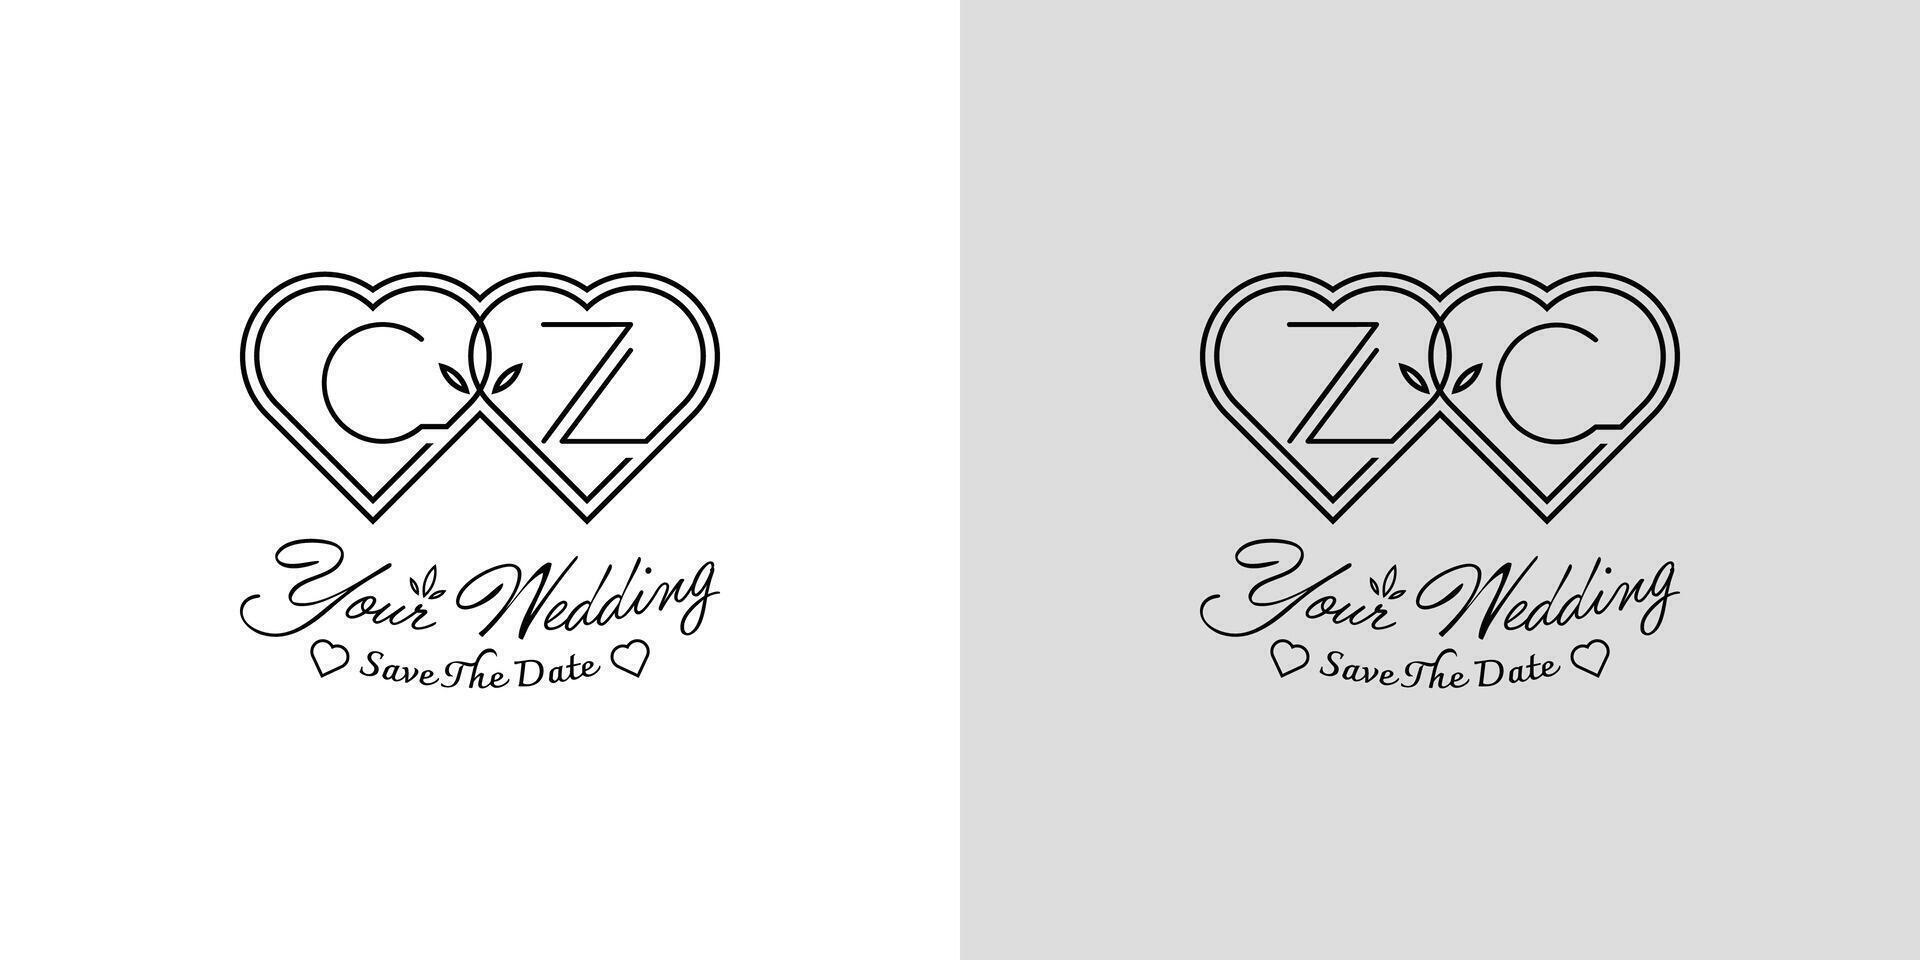 brev cz och zc bröllop kärlek logotyp, för par med c och z initialer vektor